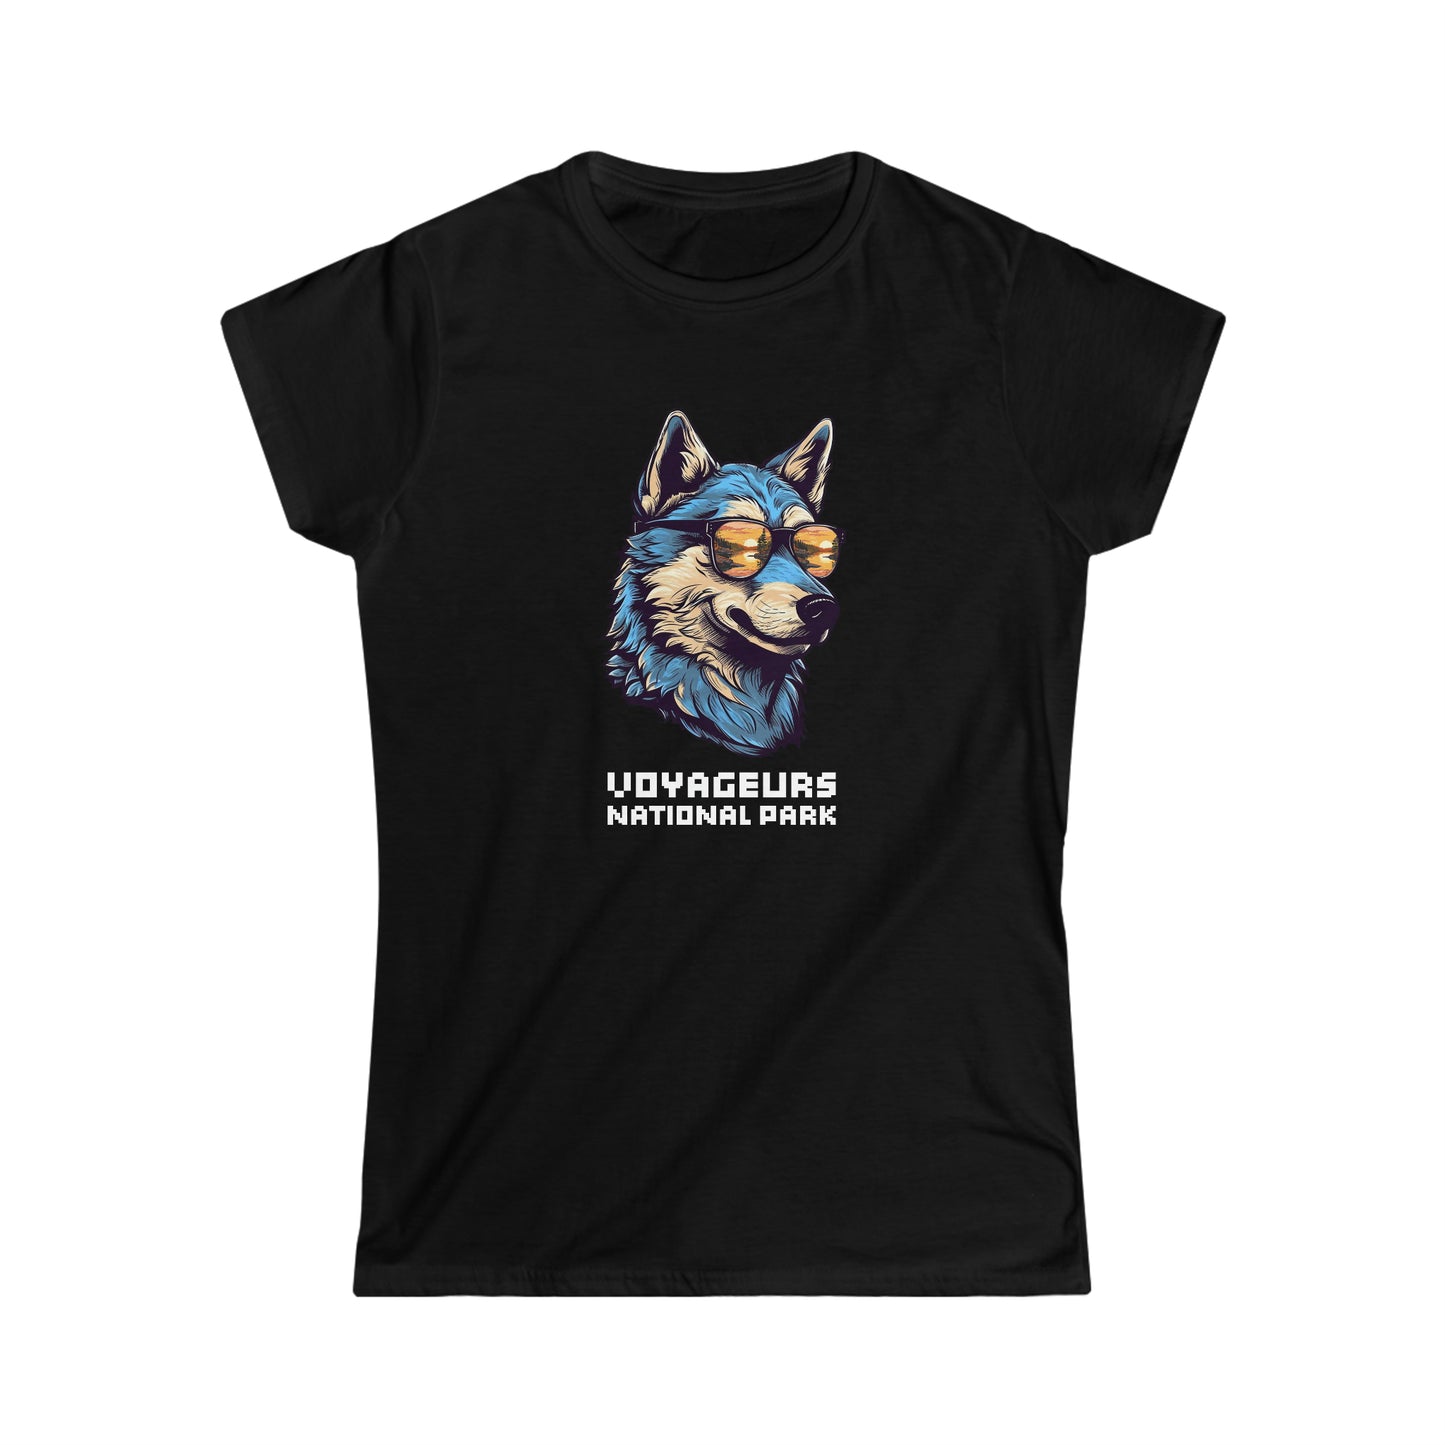 Voyageurs National Park Women's T-Shirt - Cool Wolf